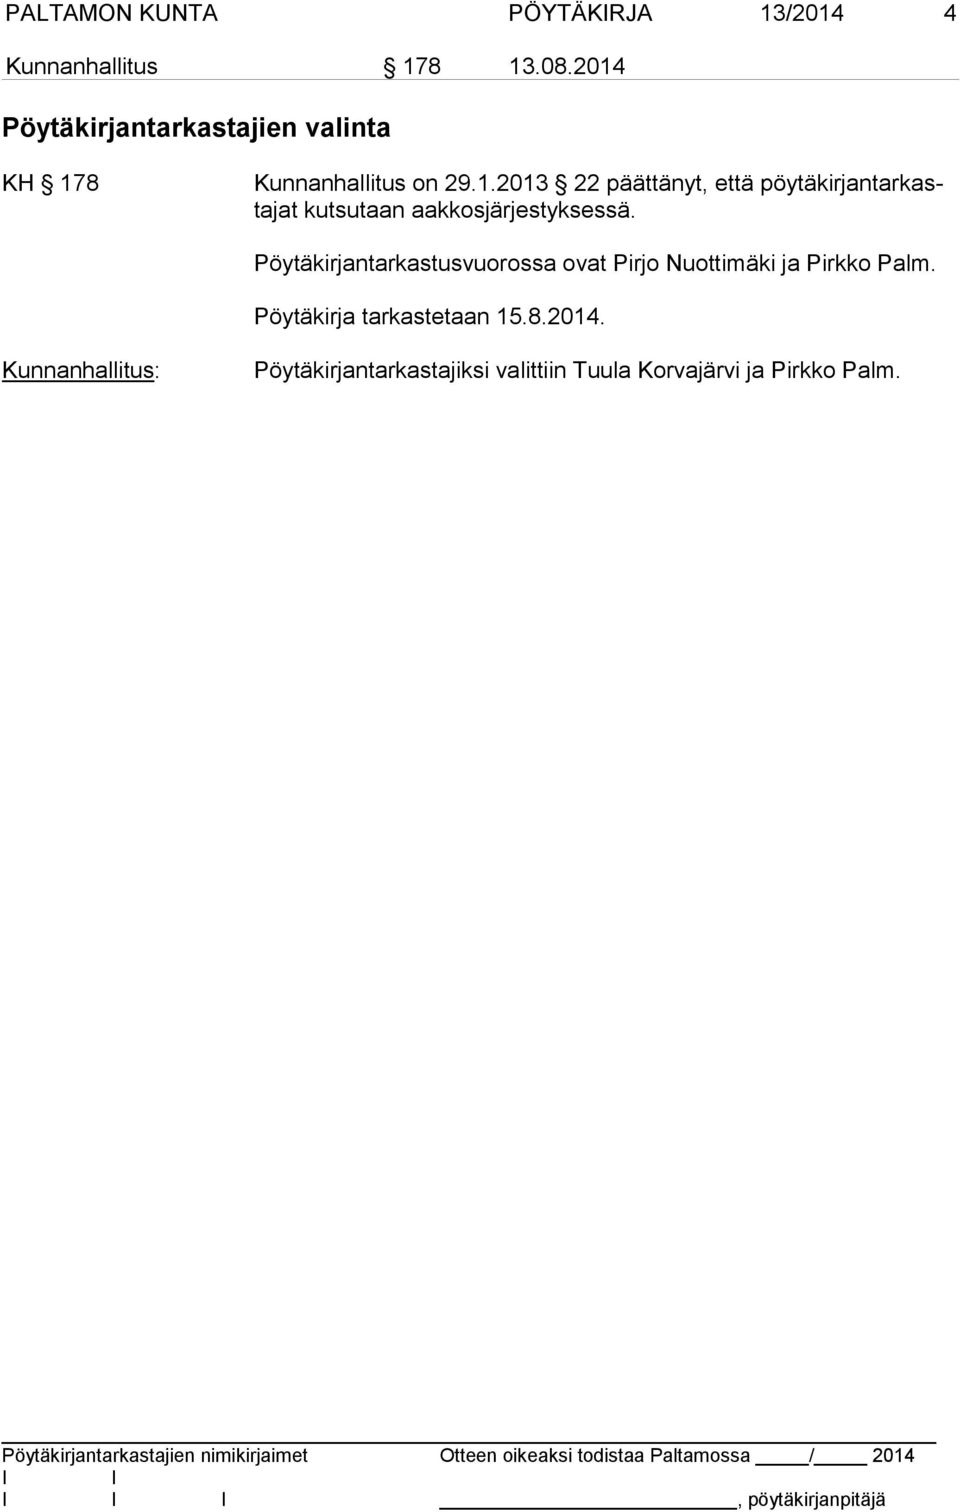 Pöytäkirjantarkastusvuorossa ovat Pirjo Nuottimäki ja Pirkko Palm. Pöytäkirja tarkastetaan 15.8.2014.